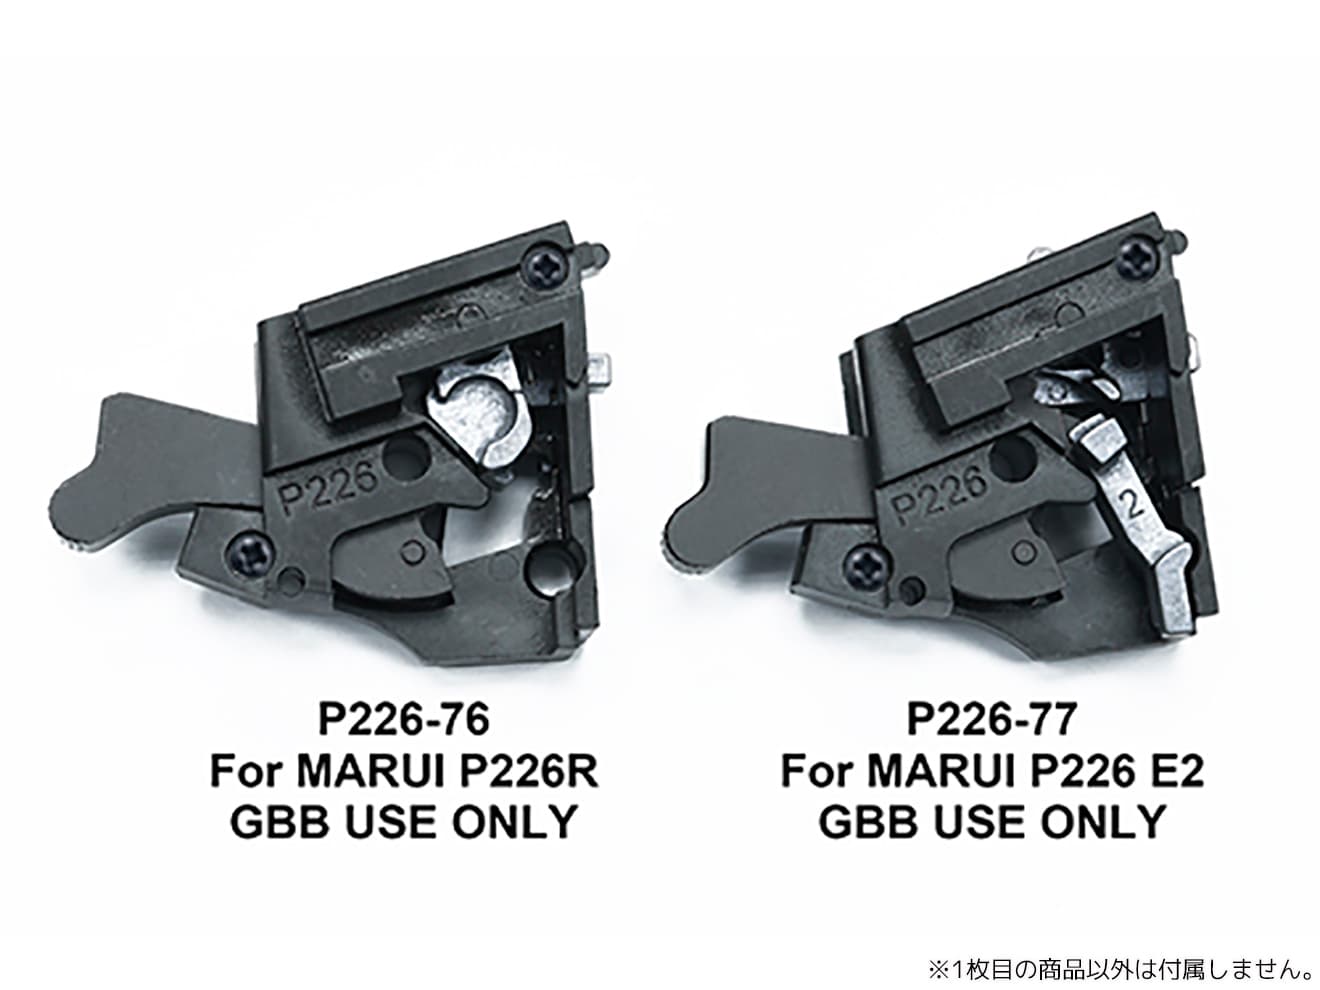 GUARDER 強化 スチールリアシャーシ for マルイ P226/E2シリーズ